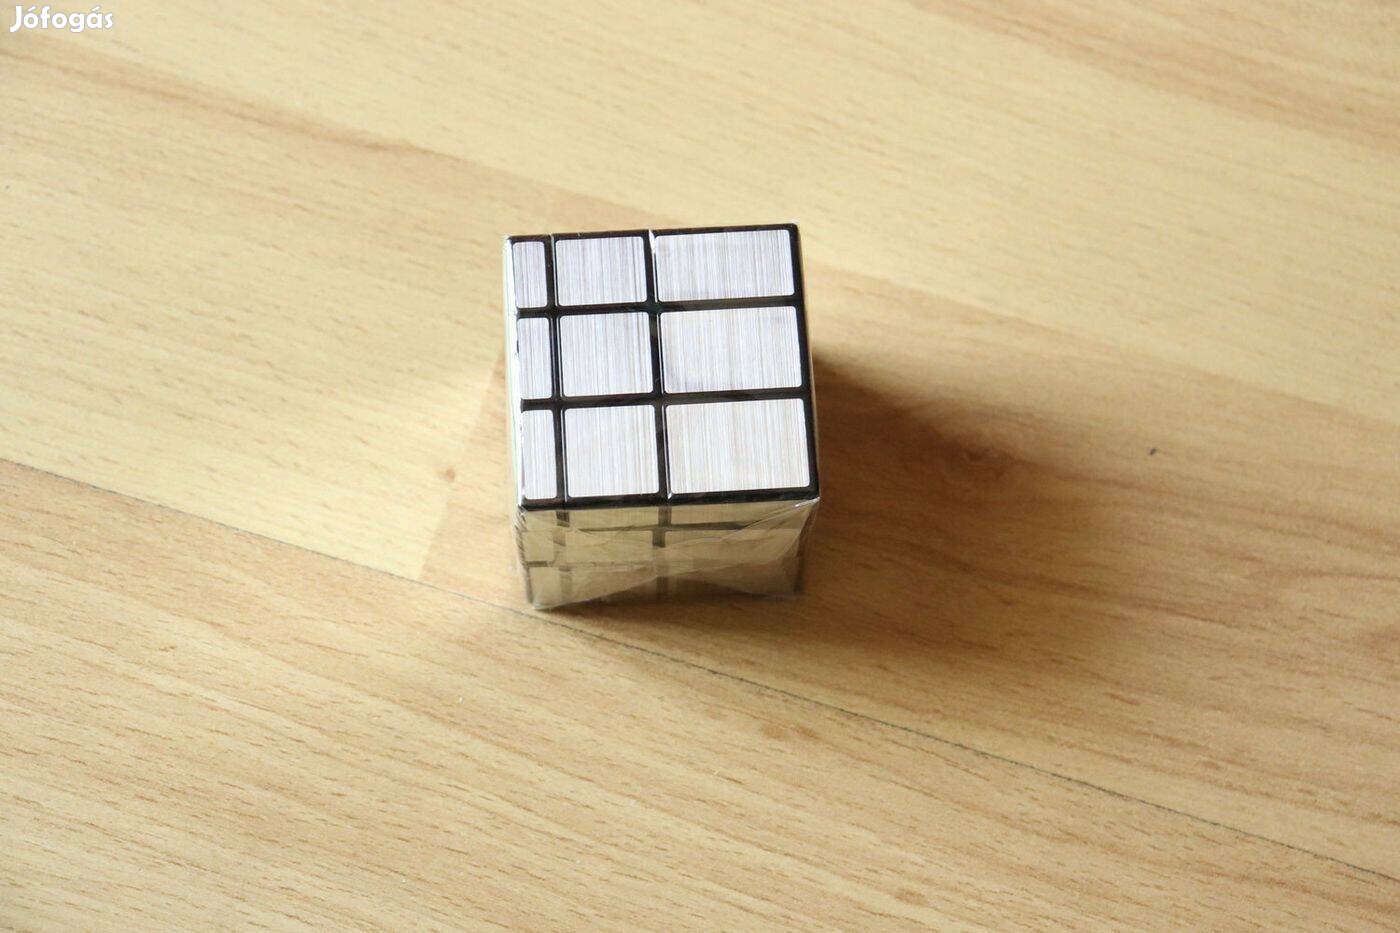 Rubik gyors verszeny kocka mirror 3x3 3500 Ft